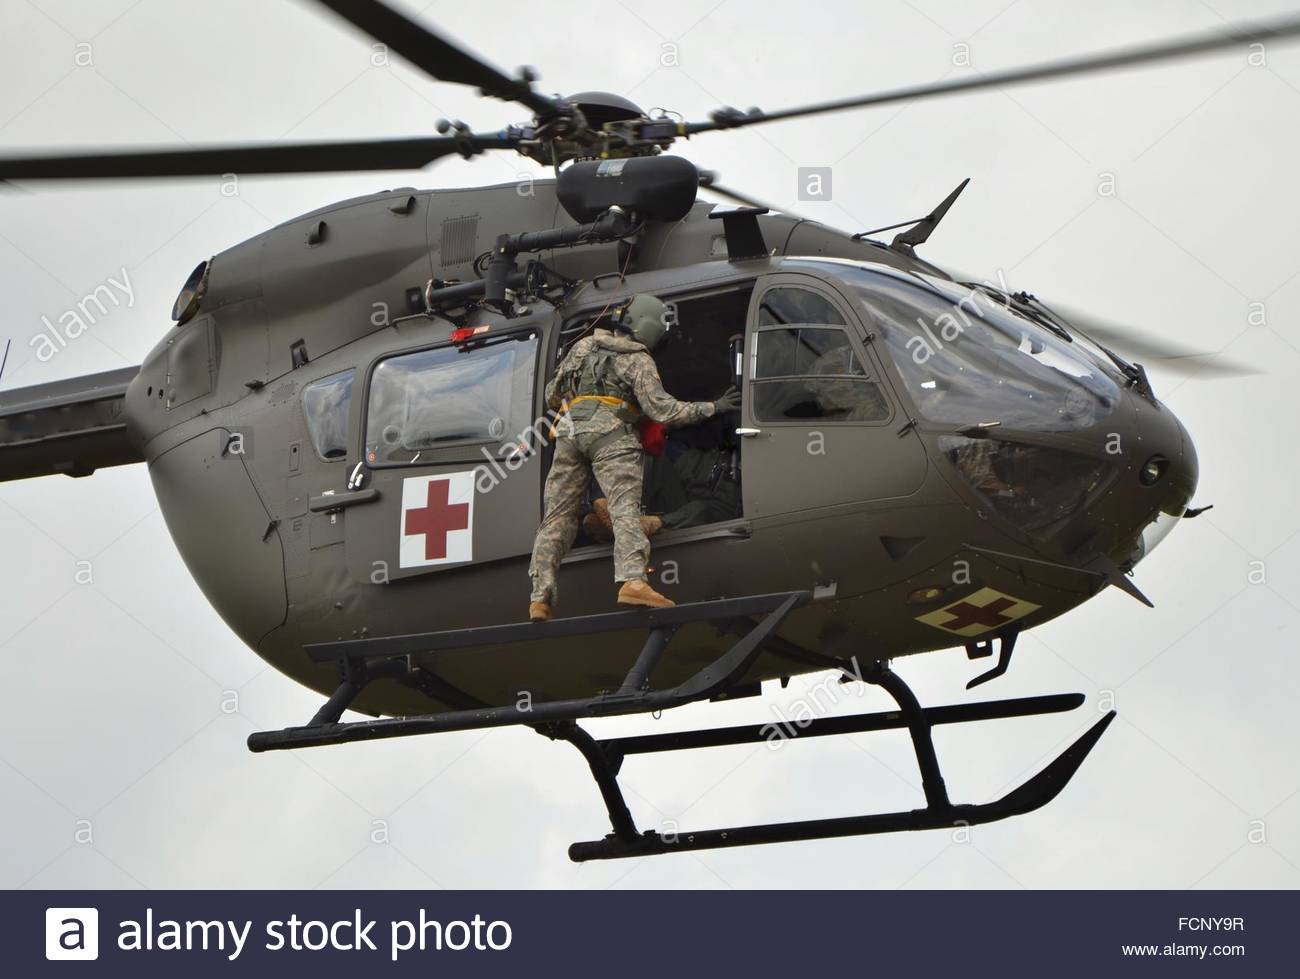 a-uh-72-lakota-medevac-utility-helicopter-FCNY9R.jpg